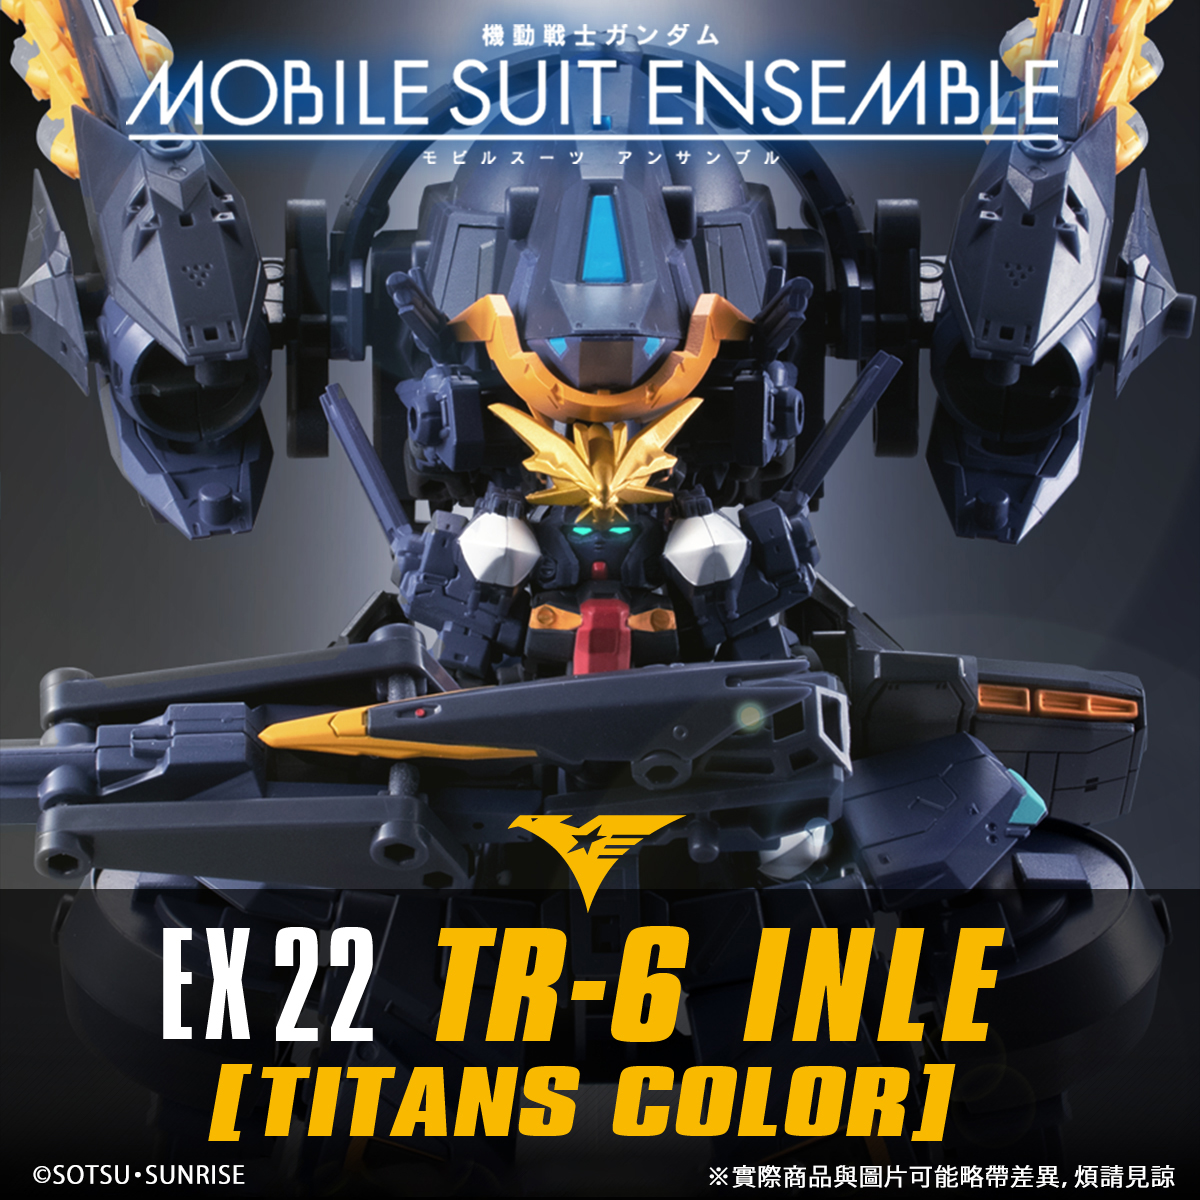 MOBILE SUIT ENSEMBLE EX22 TR-6 INLE(TITANS COLOR)